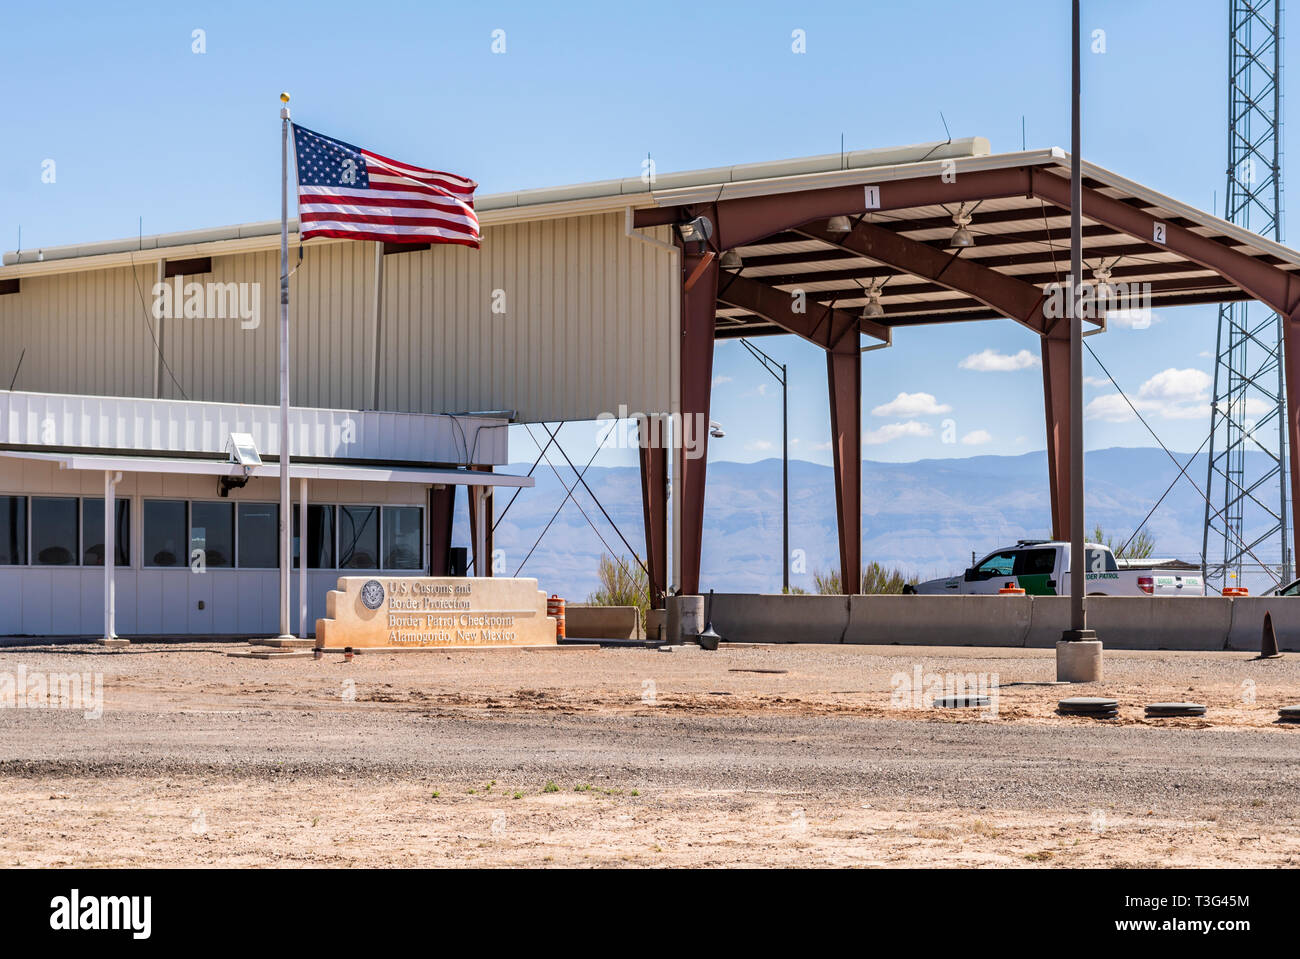 New Mexico Border Patrol Checkpoint Station auf dem US Highway 70 zwischen Alamogordo und Las Cruces, geschlossen Ressourcen der US-mexikanischen Grenze zu lenken. Stockfoto